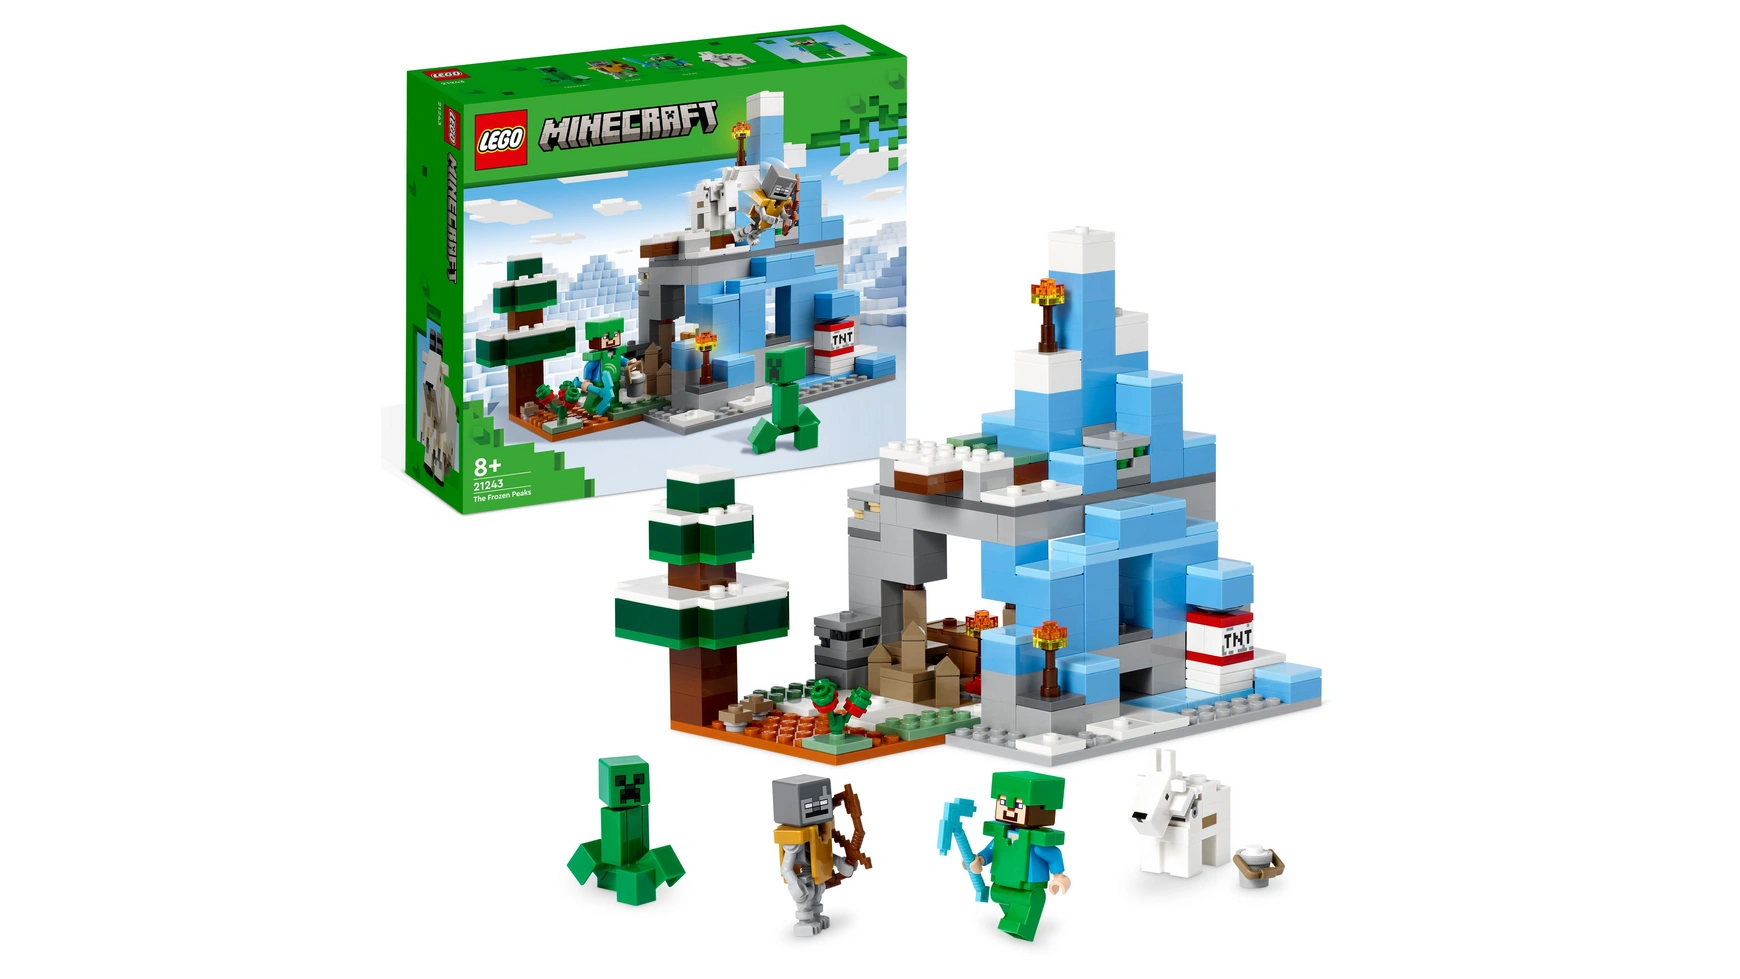 Lego Minecraft Набор Ледяные вершины и пещера, игрушка с фигурками lego minecraft подземелье пещера набор игрушек с фигурками скелетов